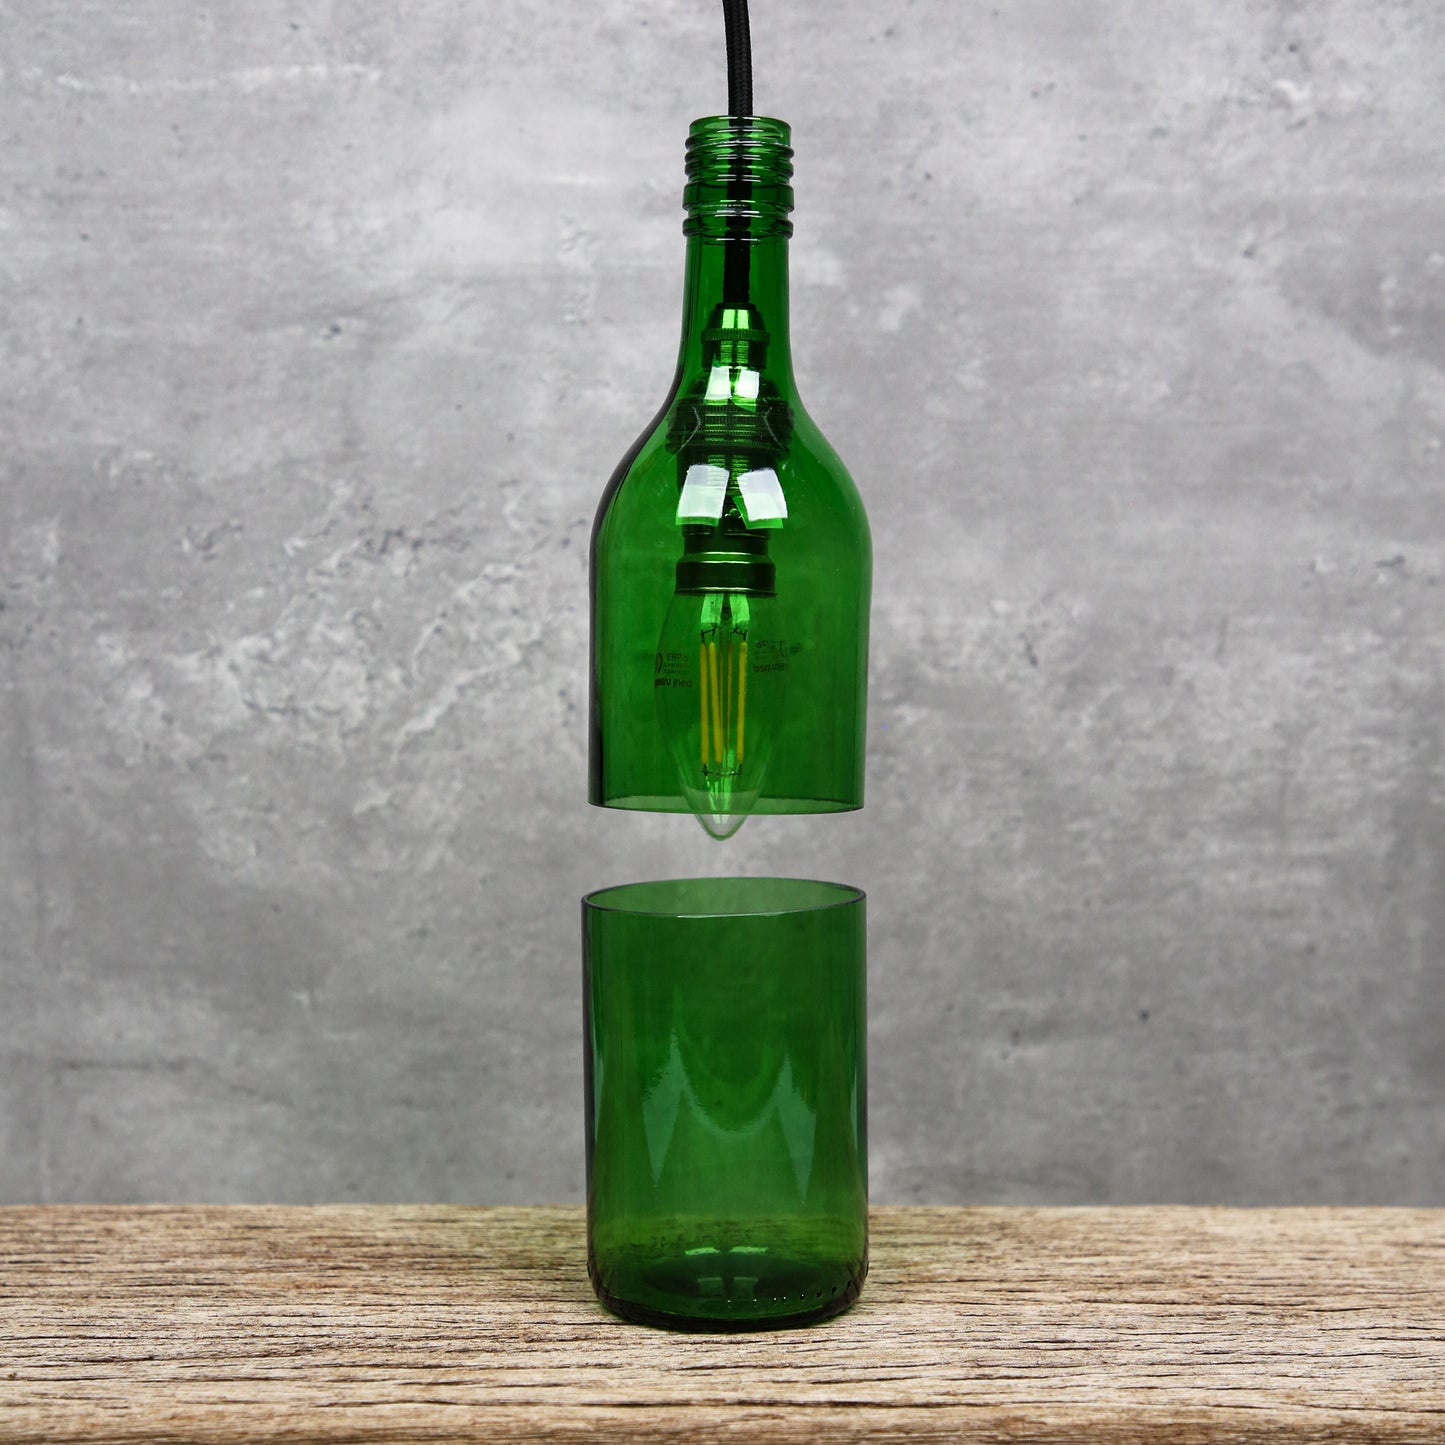 Upcycled Green Bottle Light.